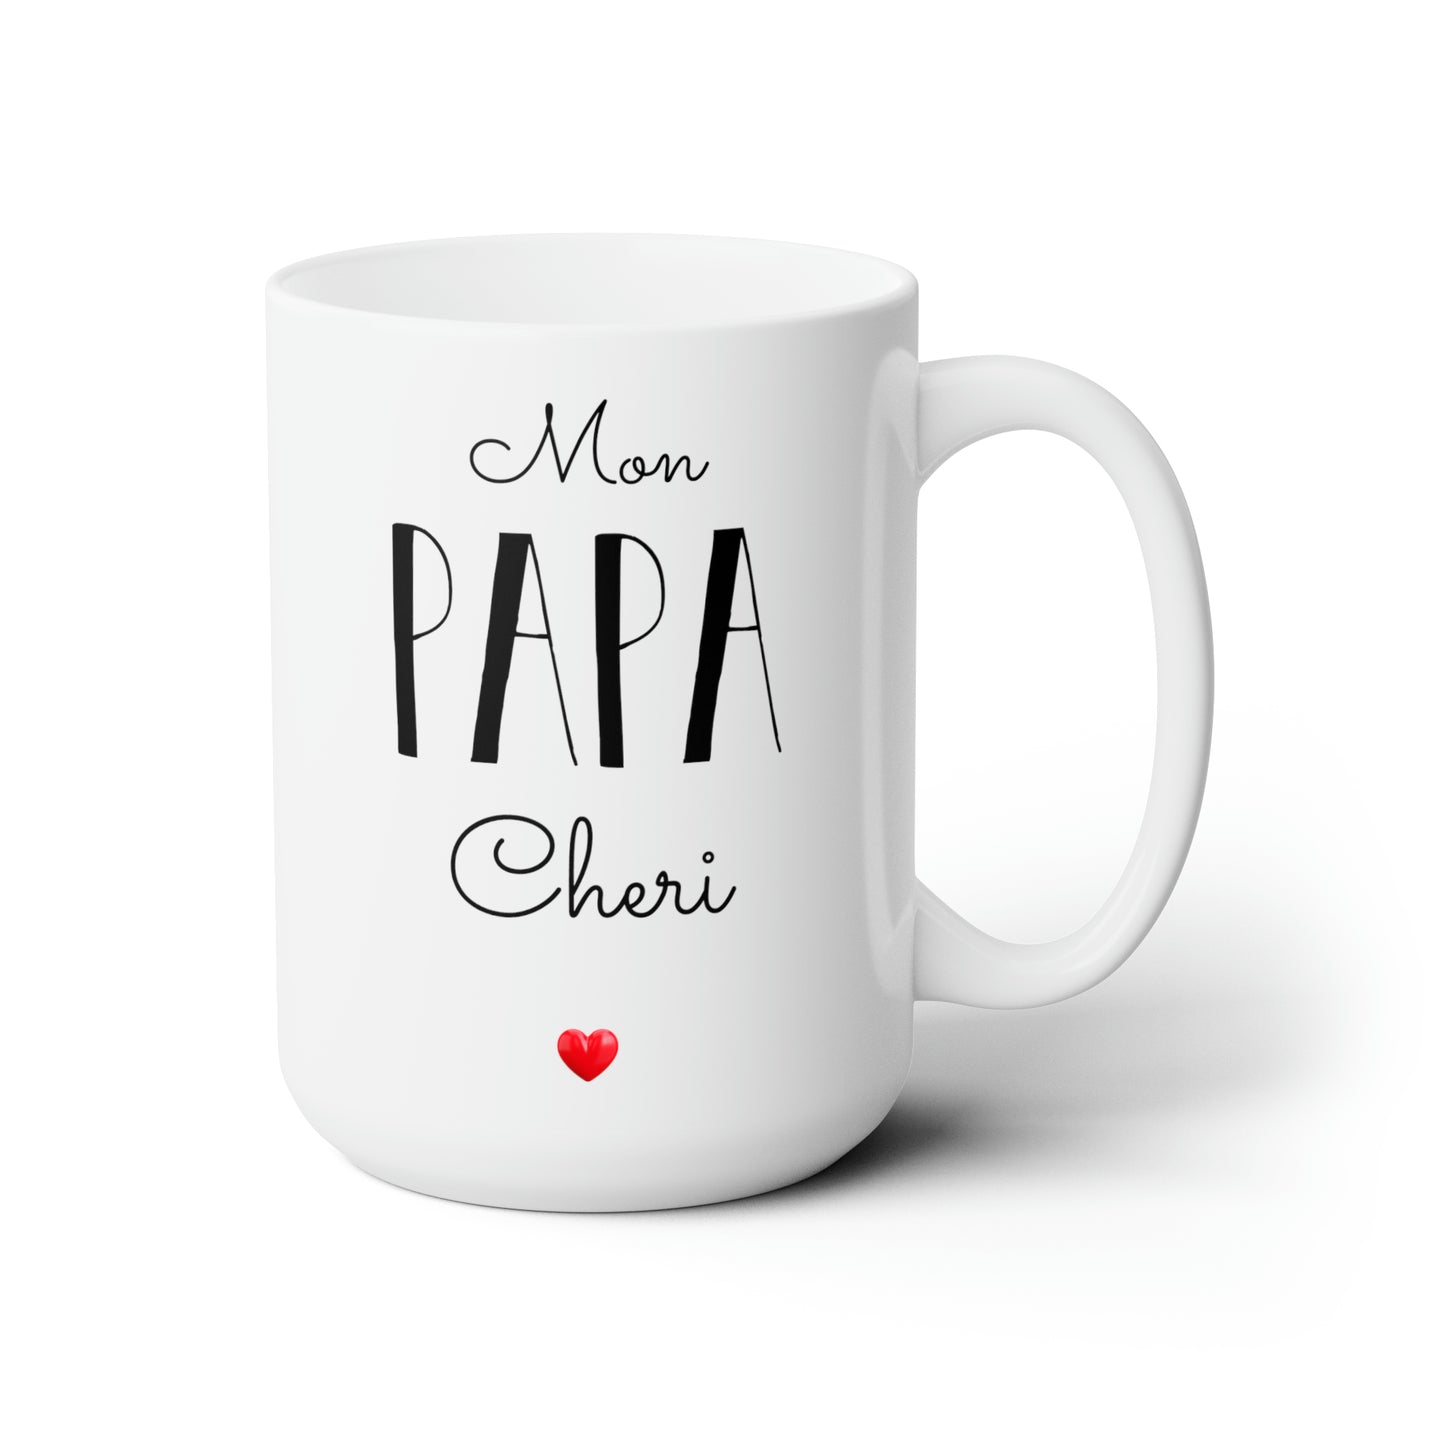 Mom, Papa and Cherry Customise Ceramic Mug 15oz, White